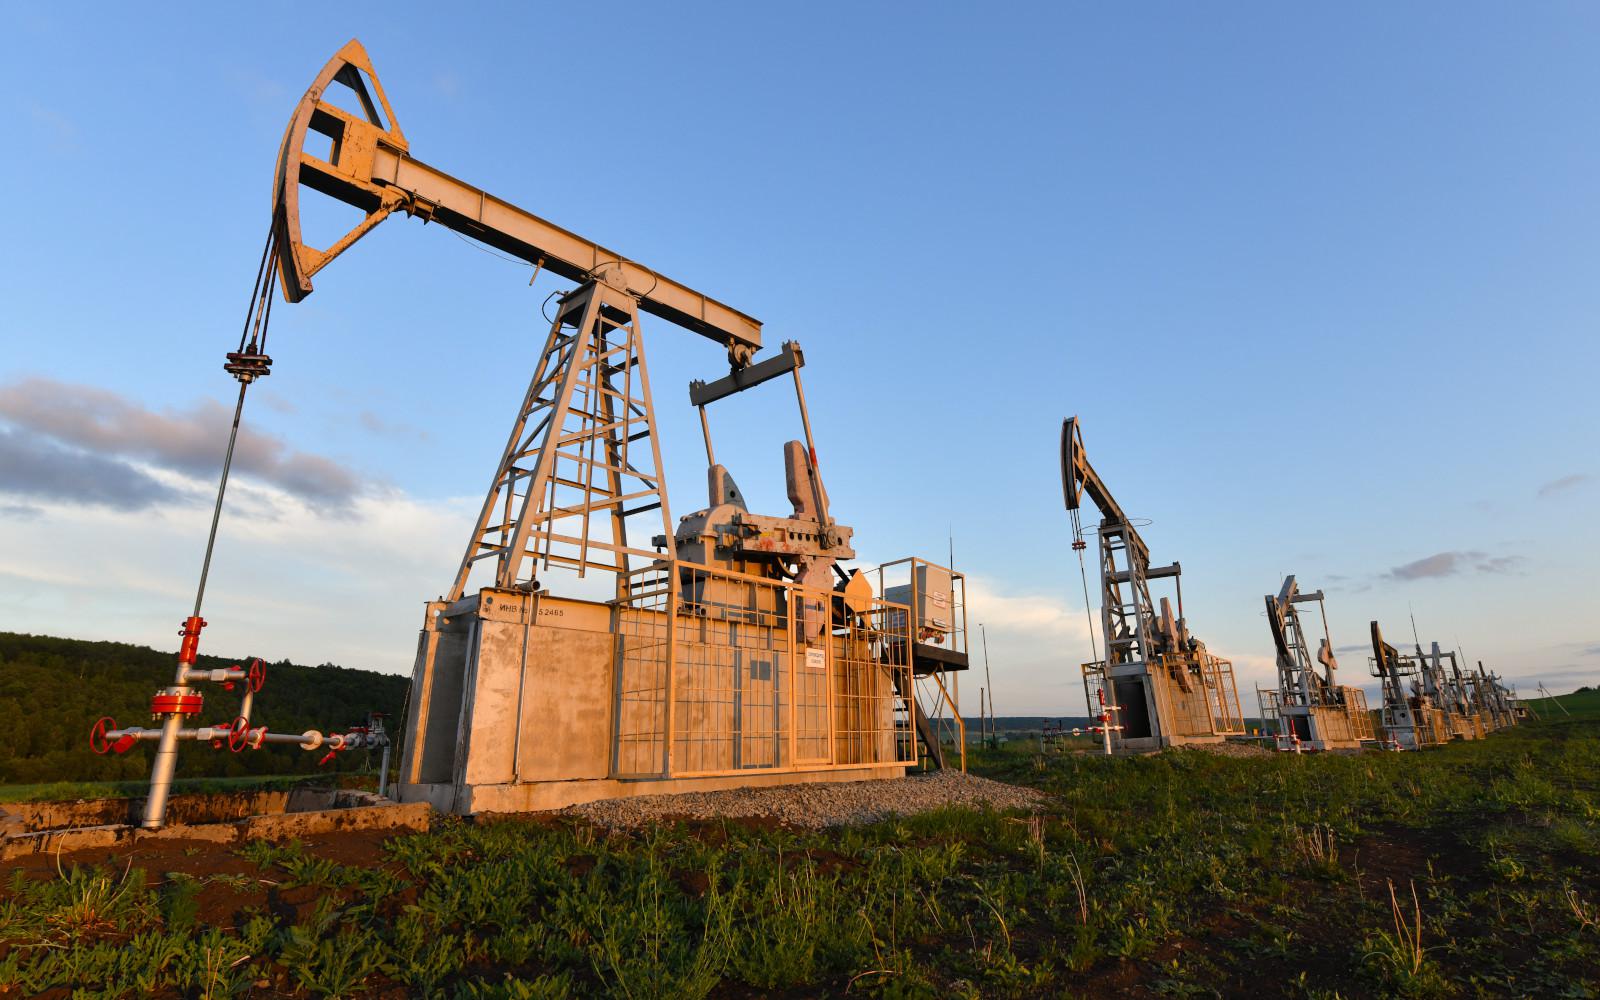 Azərbaycan neftinin qiyməti 90 dolları ötüb